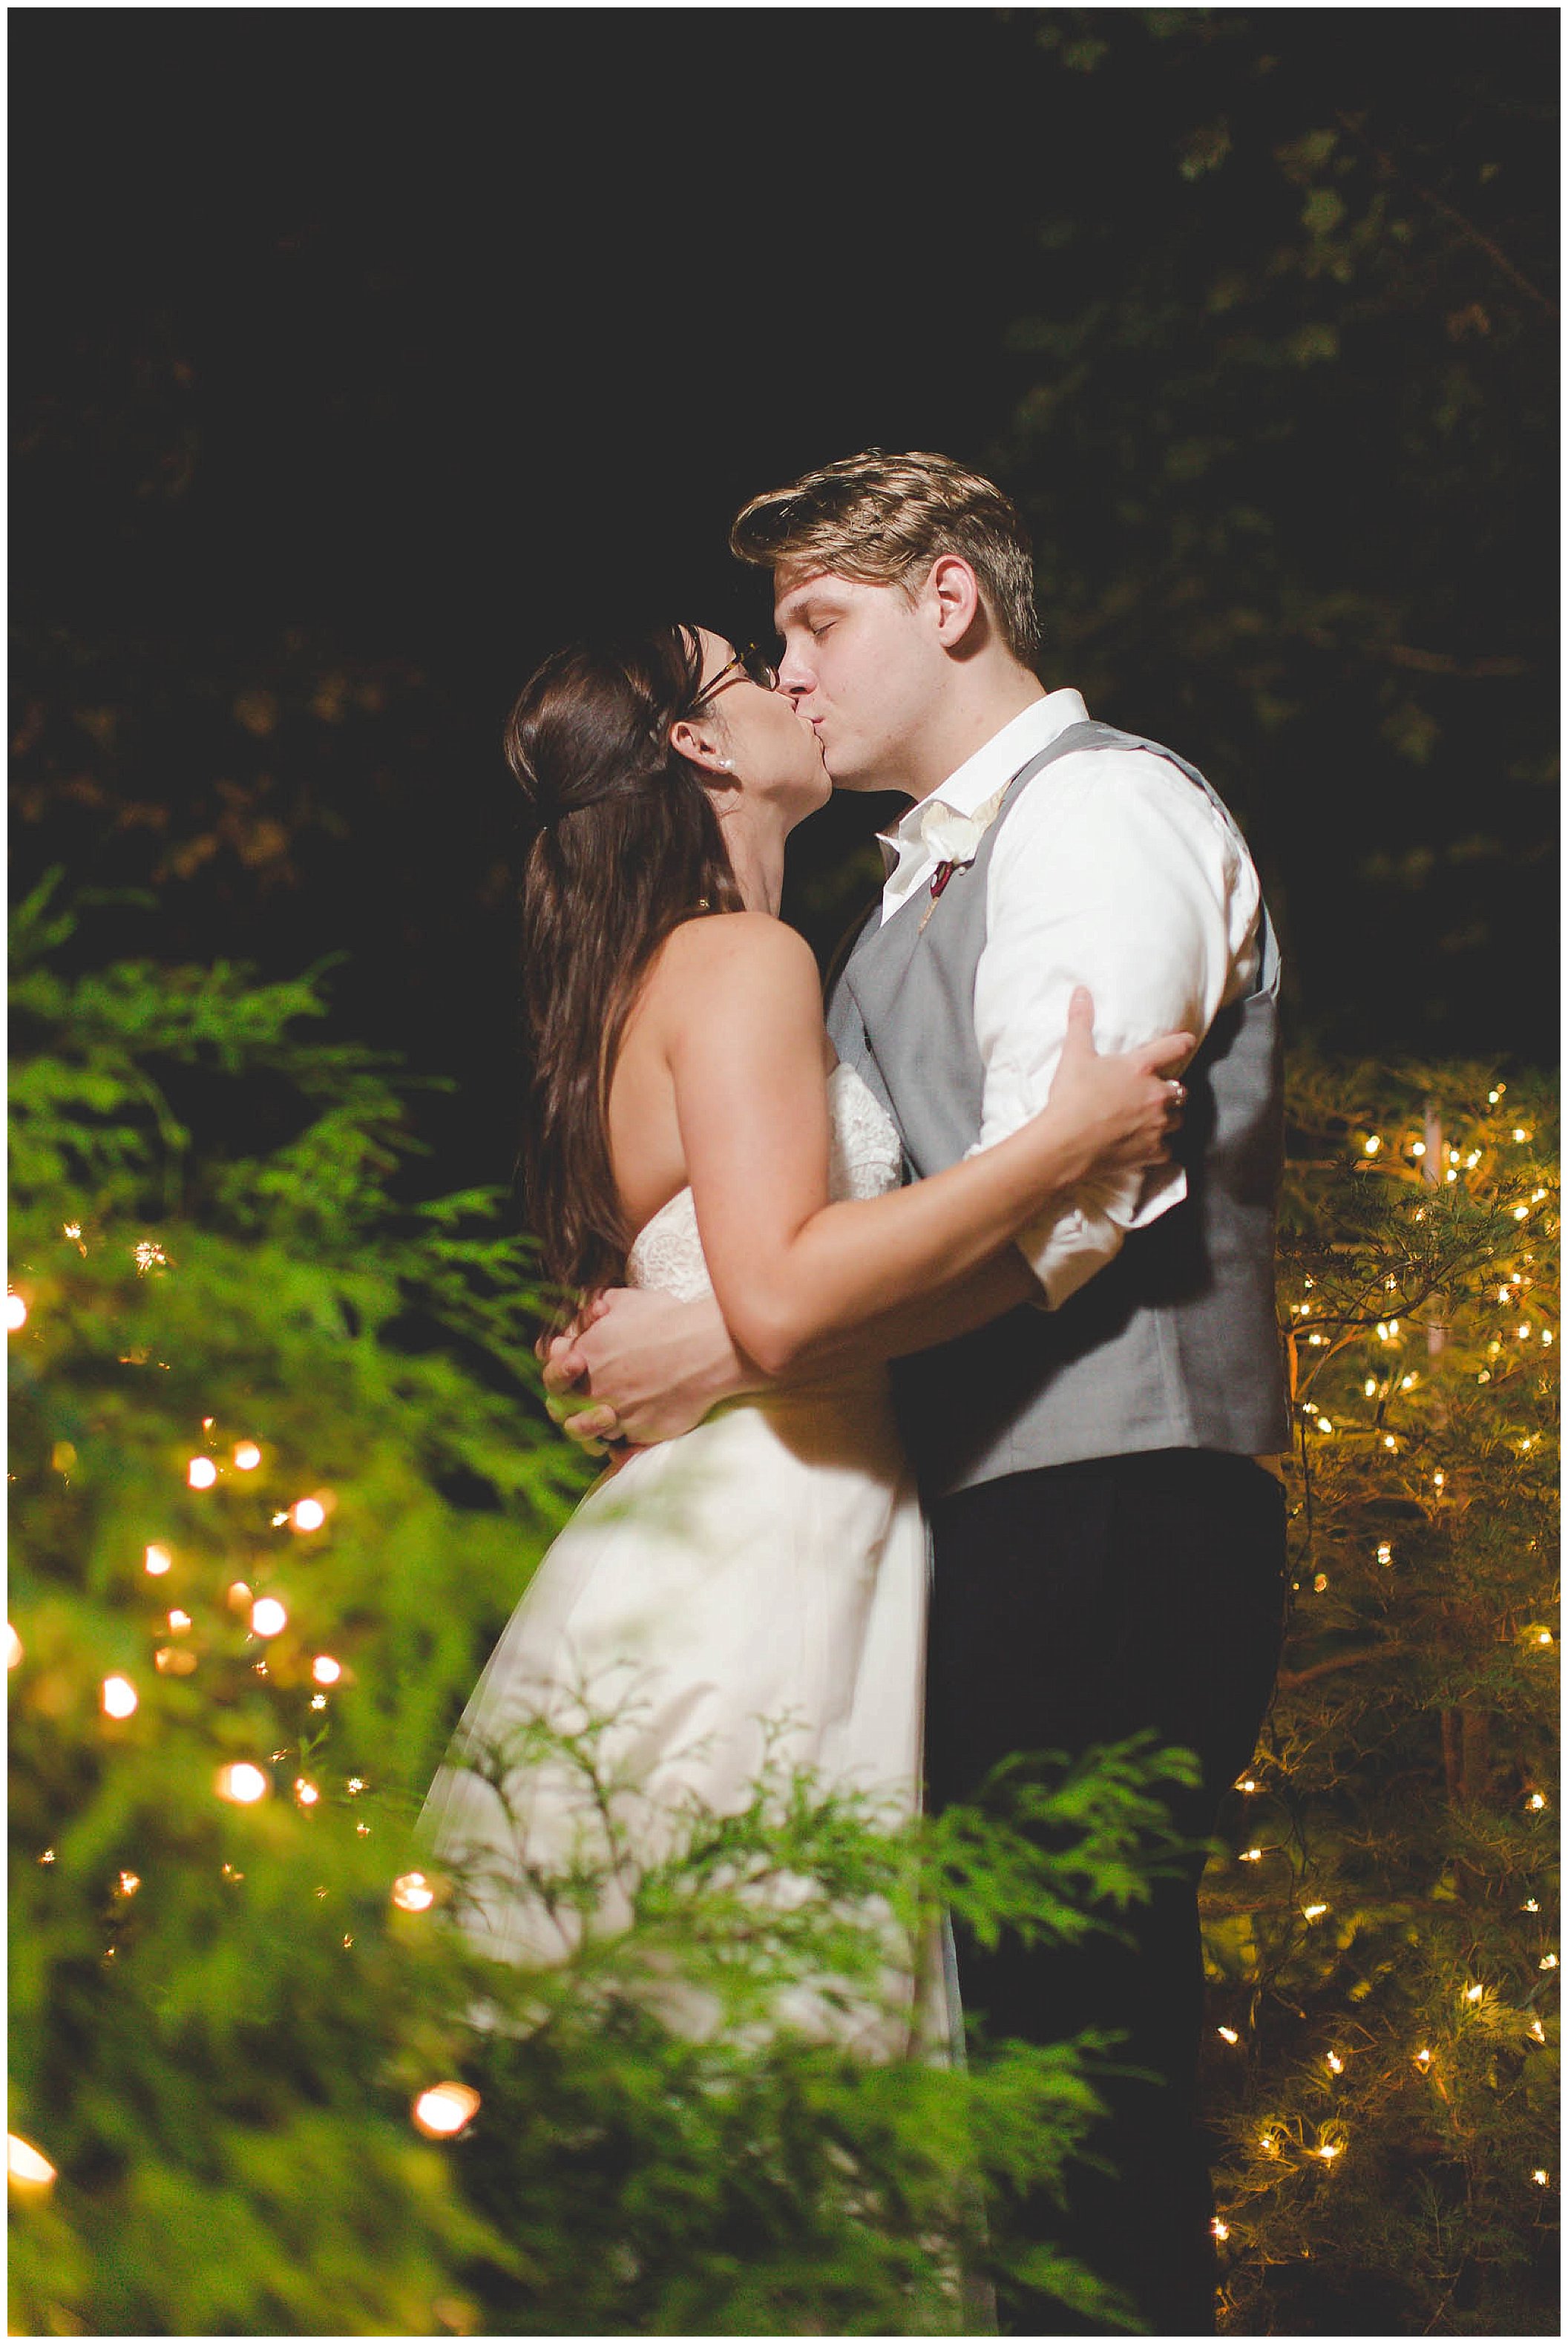 Stunning backyard wedding with twinkly lights, Fort Wayne Indiana Wedding Photographer_0025.jpg